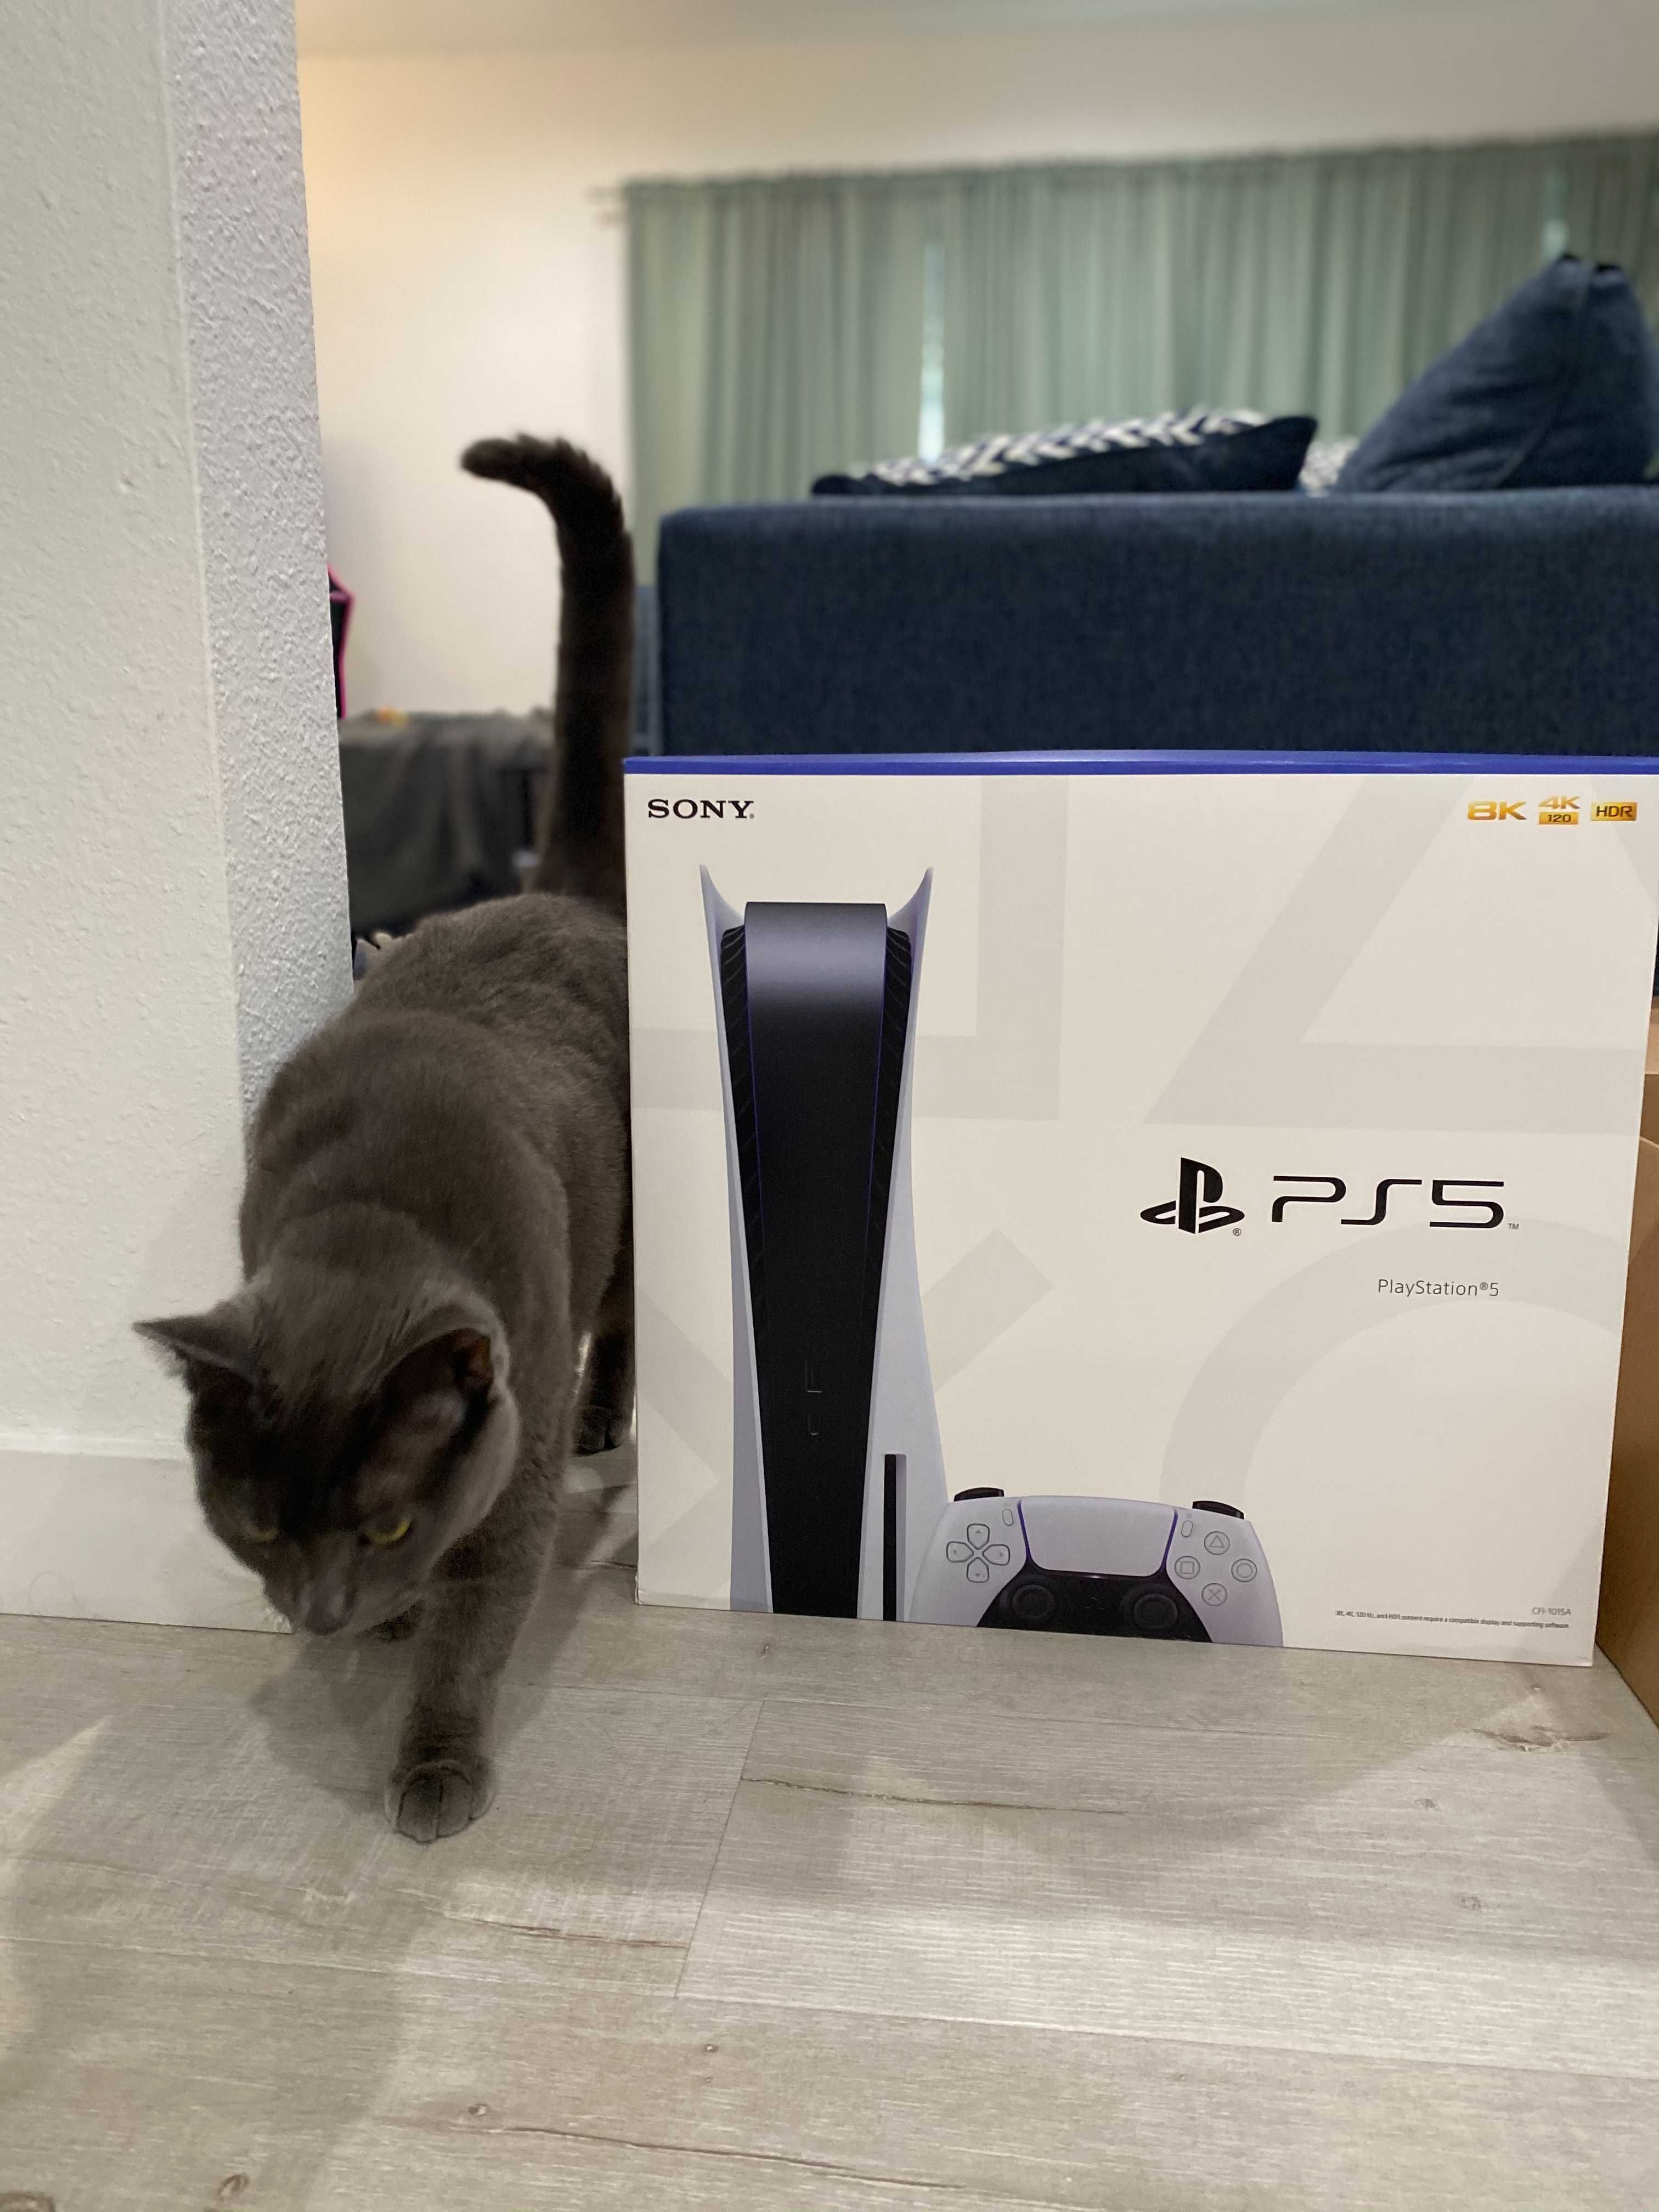 PlayStation 5 и кот по кличке Брюс.
Источник: IGN